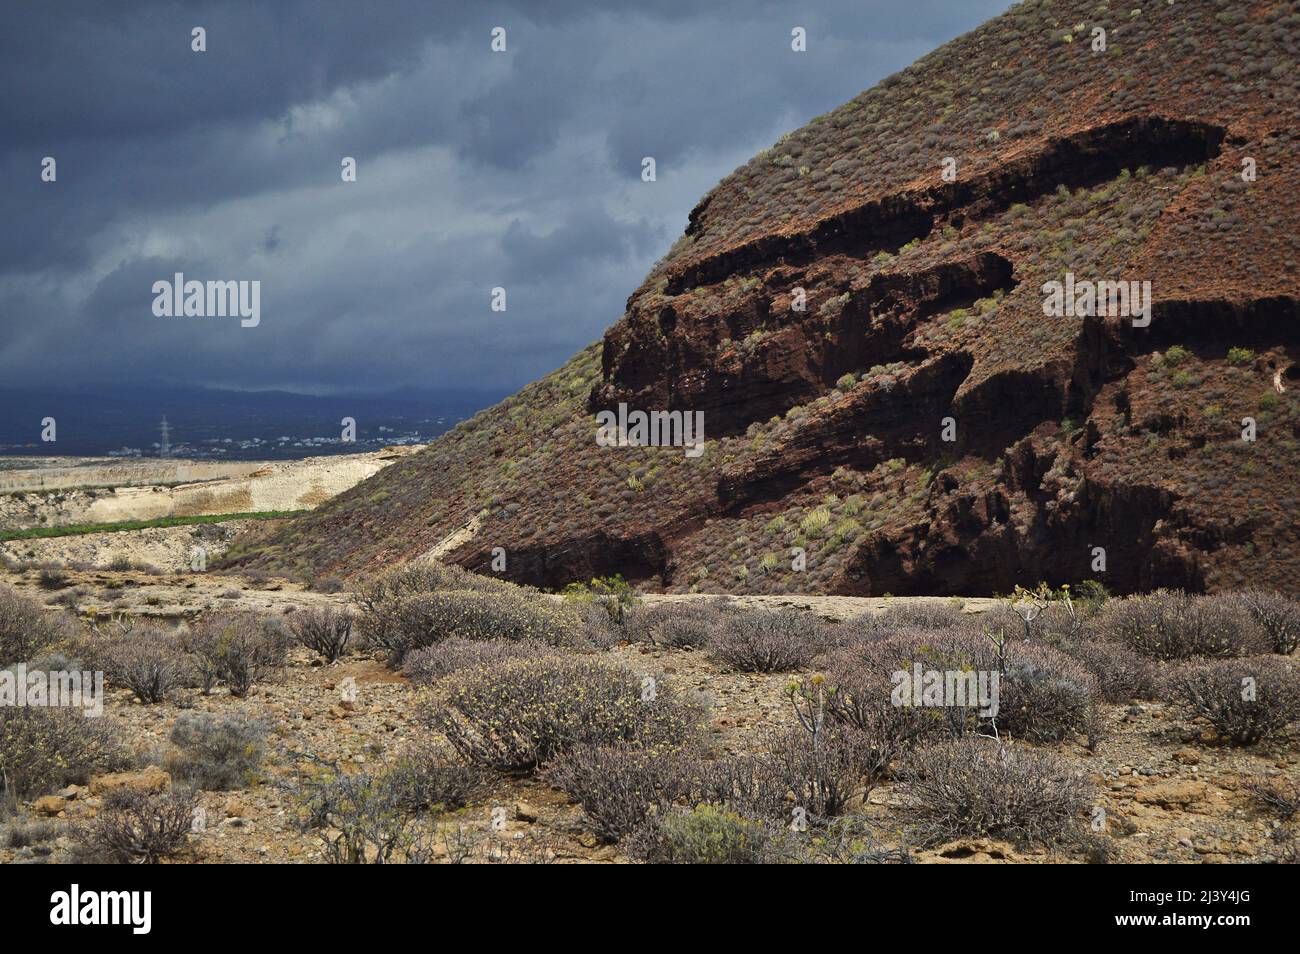 Erodierte vulkanische Berge und sukkkkkkulente Sträucher wachsen in der ariden Landschaft von Teneriffa Süd, Kanarische Inseln Spanien. Stockfoto